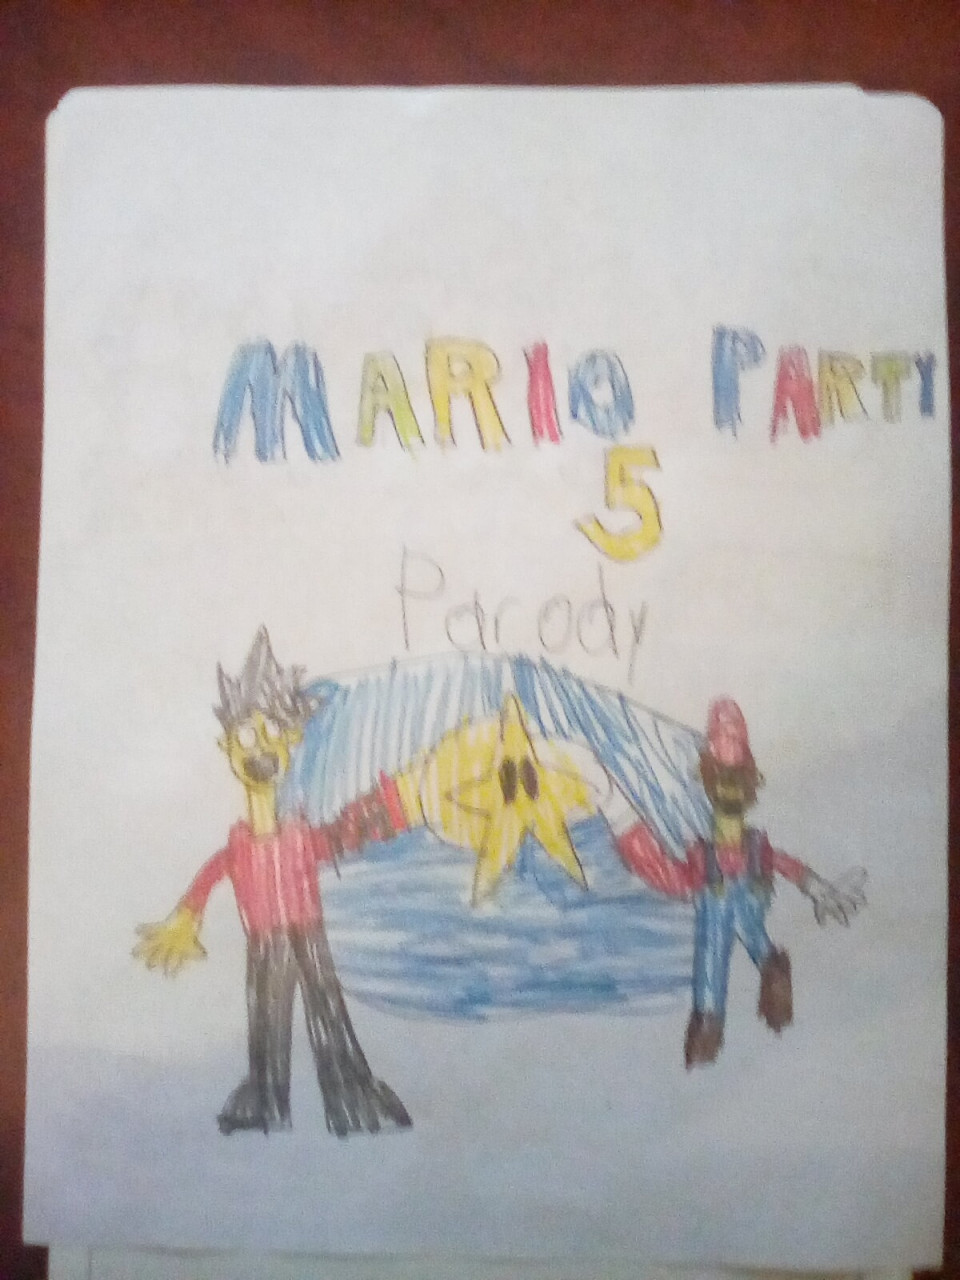 mario party 5 part 1